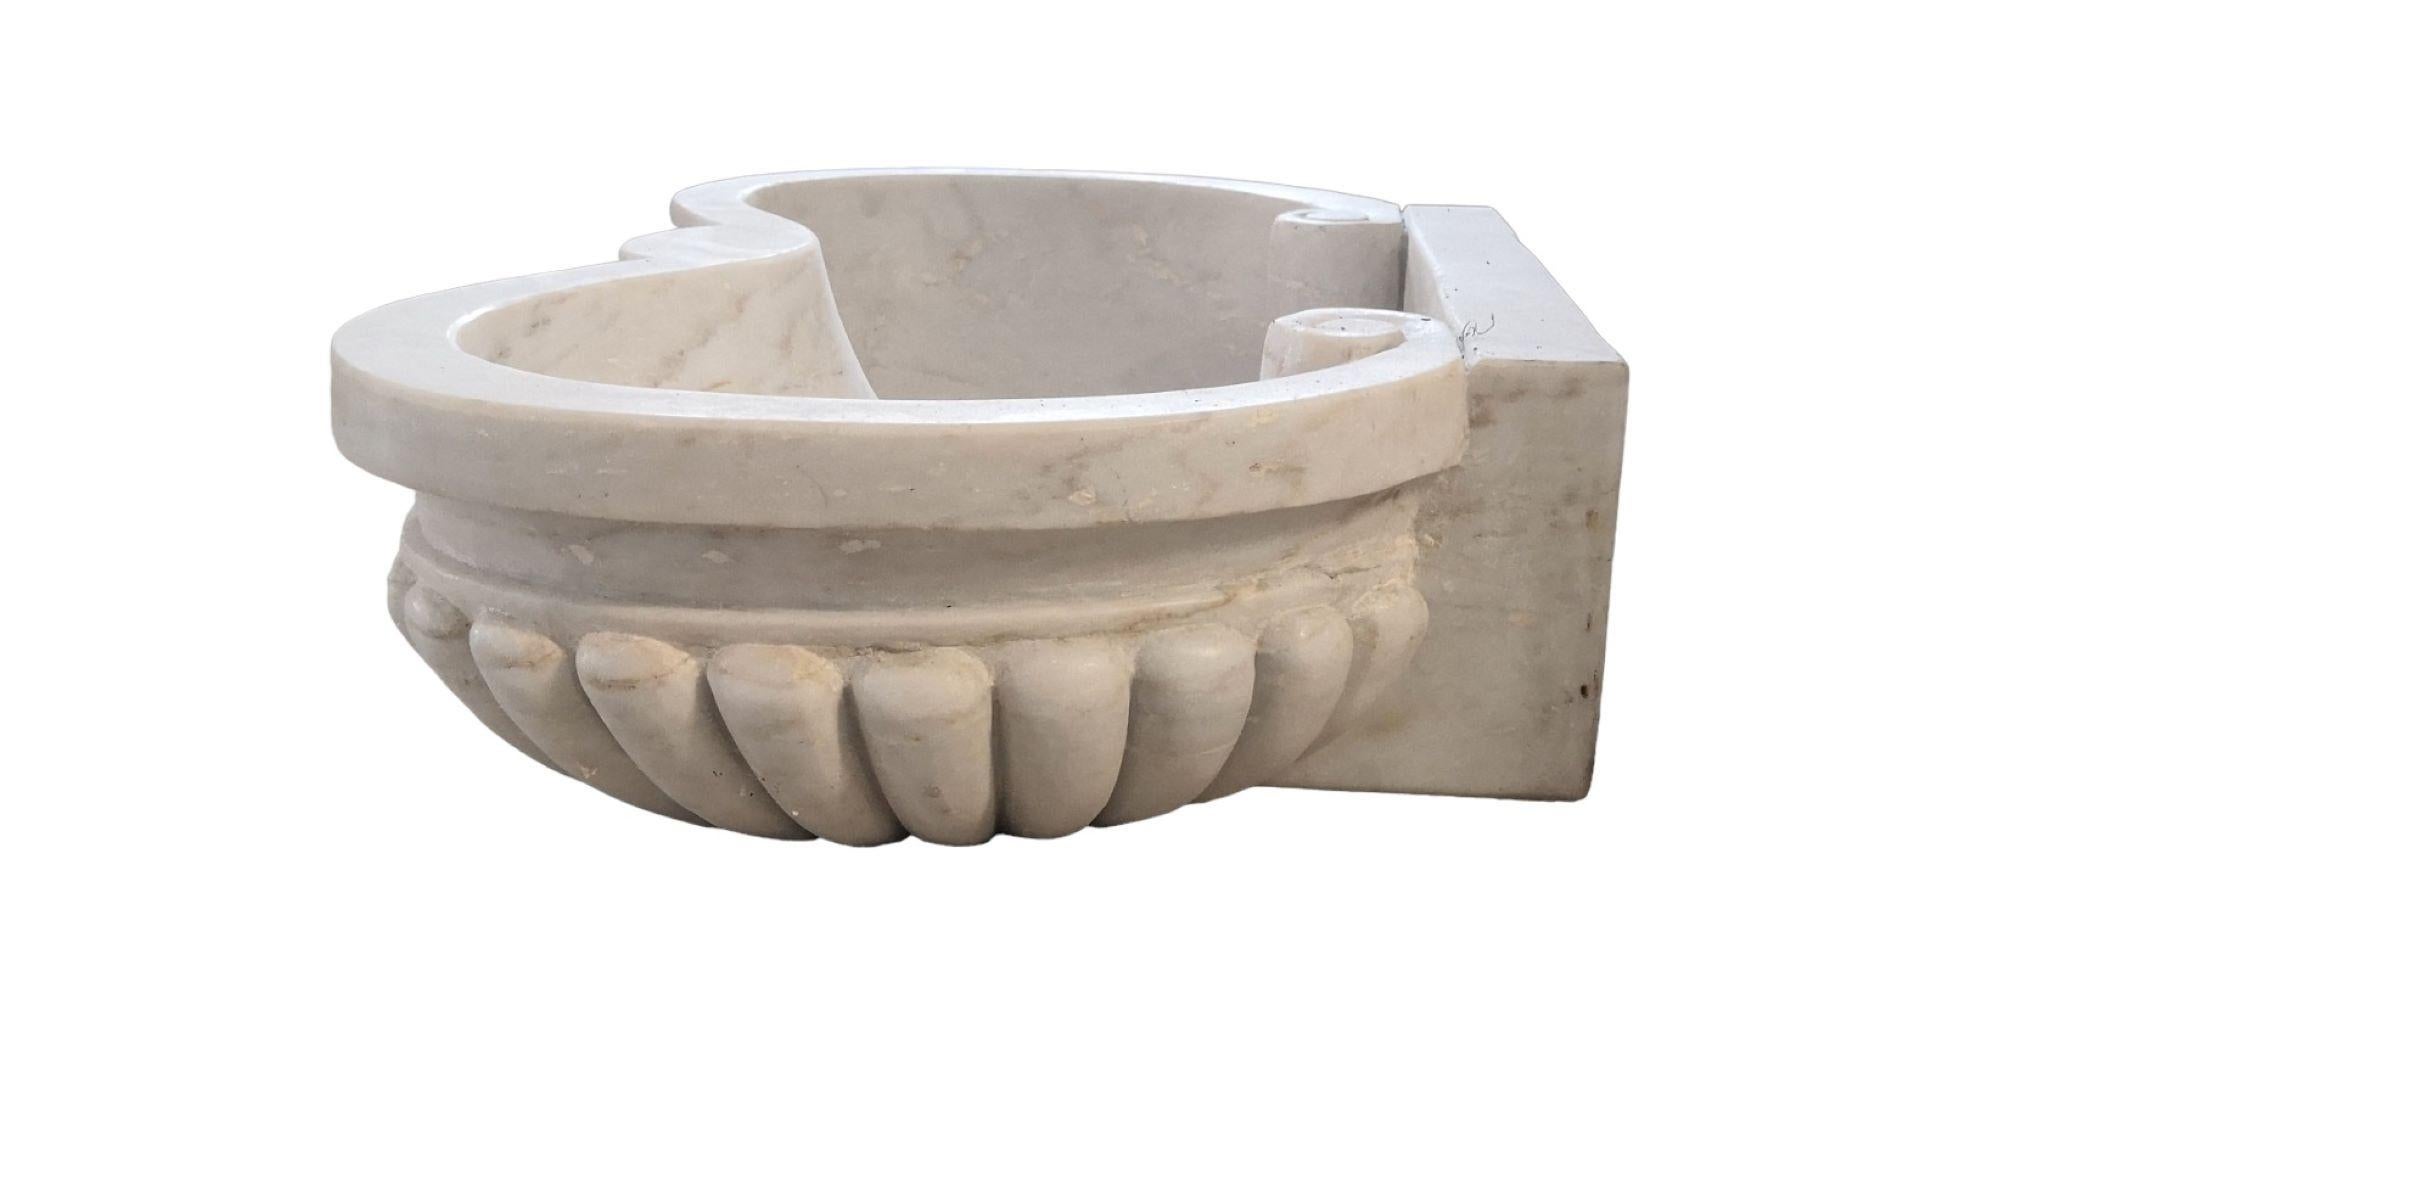 Klassisches italienisches Waschbecken, aus einem einzigen Block weißen Marmors geschnitten, mit serpentinenförmiger Front und gadronierten Schnitzereien. Dieses griechisch-römische Design passt gut zu alten oder neuen Häusern.


 